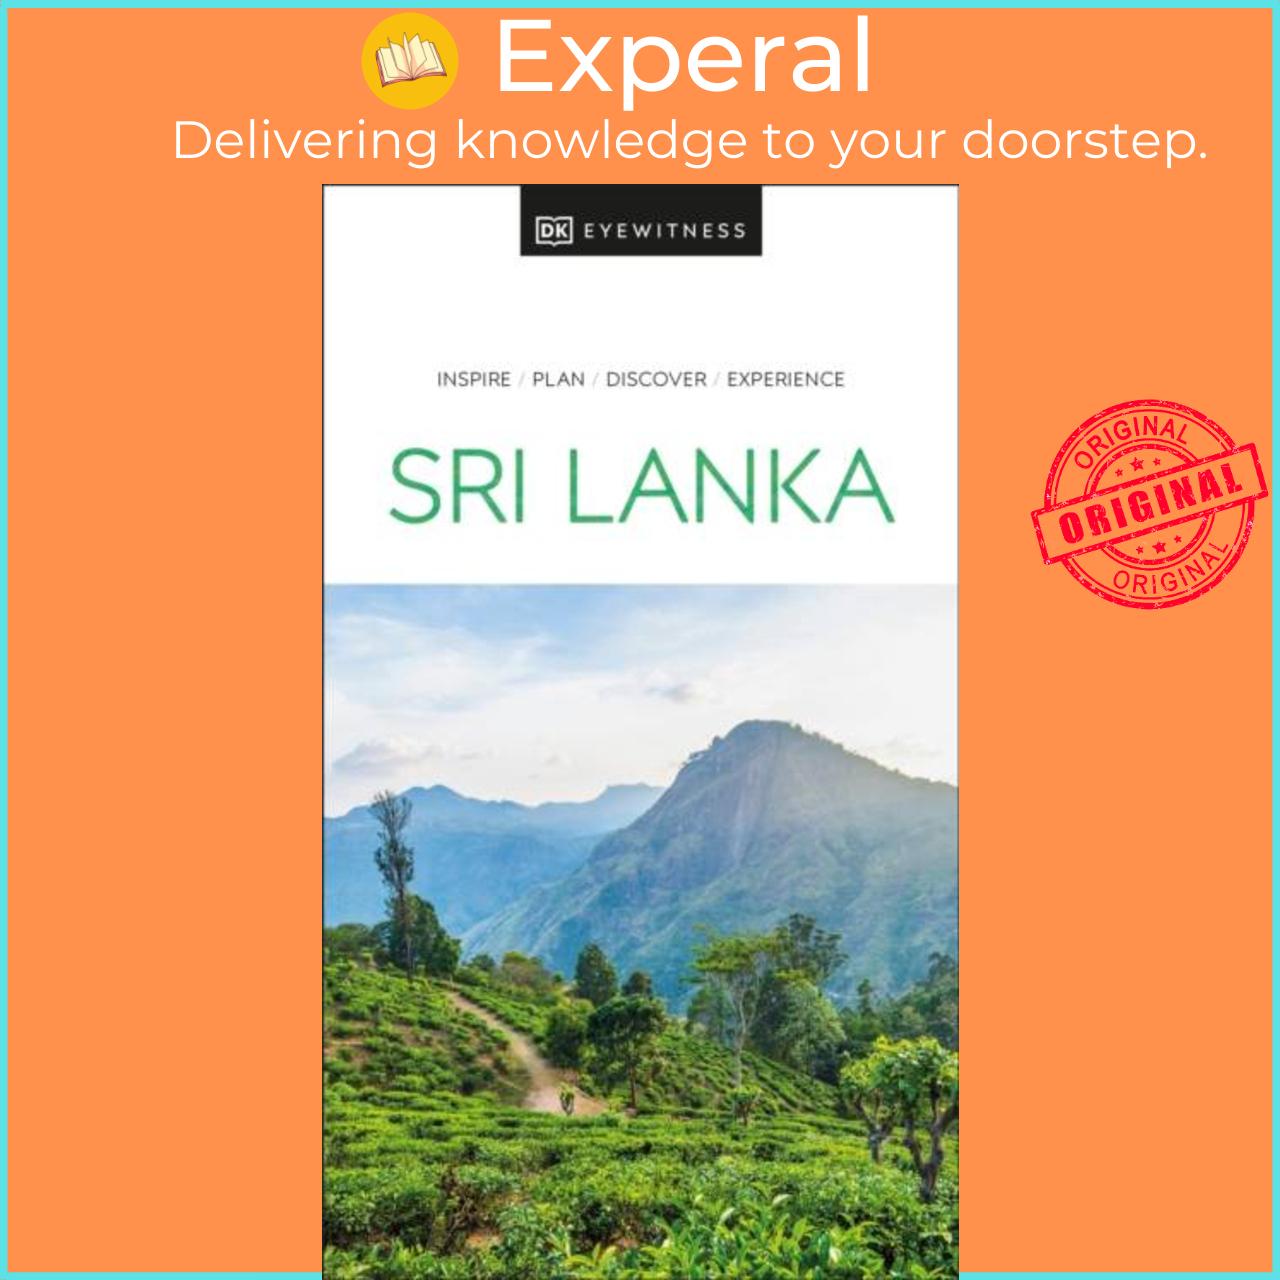 Sách - DK Eyewitness Sri Lanka by DK Eyewitness (UK edition, paperback)